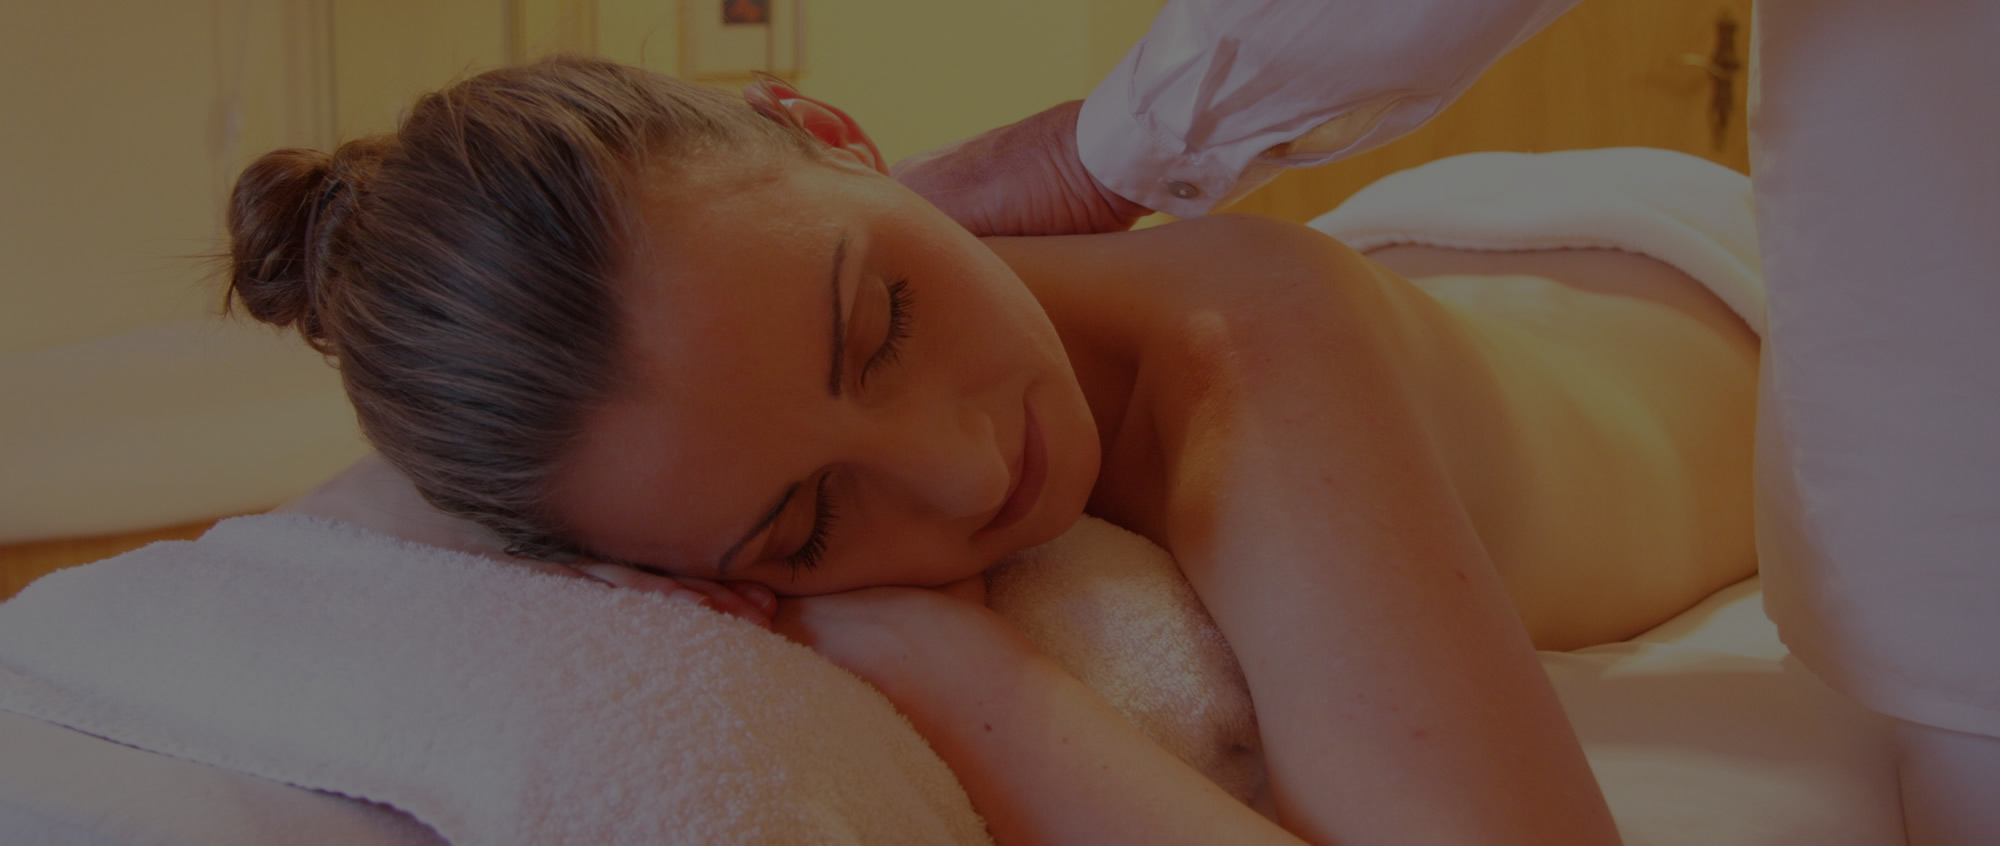 A Swedish Massage Will Make A Awesome Gift item